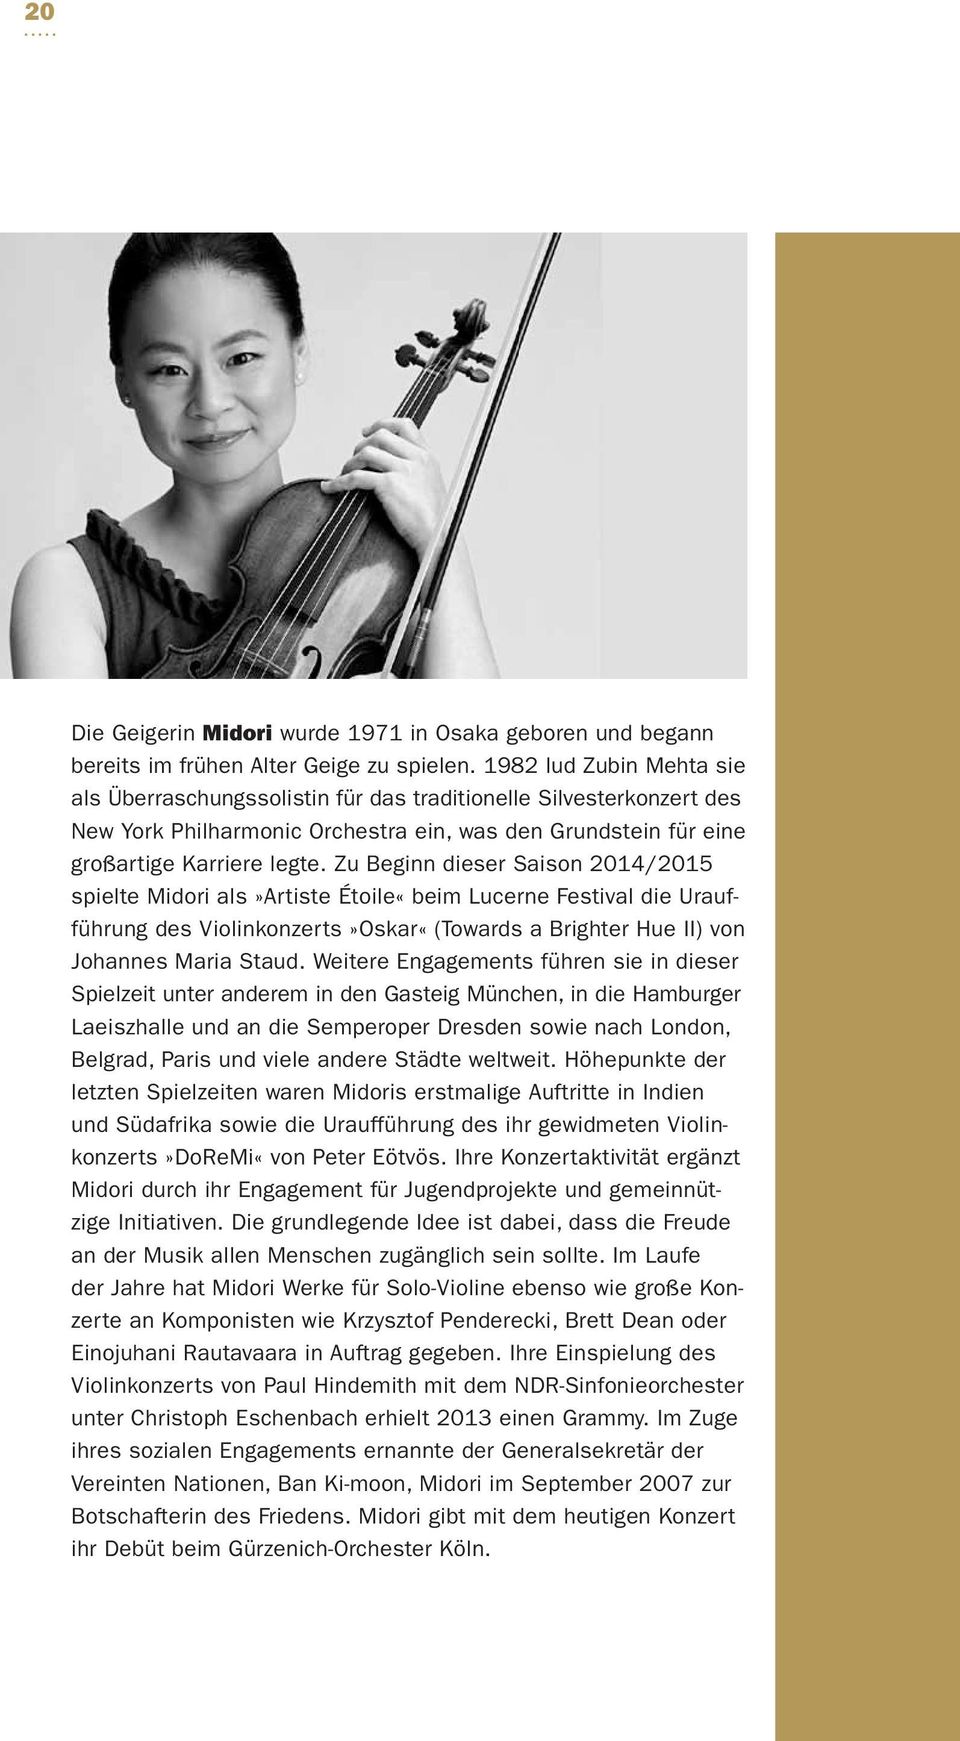 Zu Beginn dieser Saison 2014/2015 spielte Midori als»artiste Étoile«beim Lucerne Festival die Uraufführung des Violinkonzerts»Oskar«(Towards a Brighter Hue II) von Johannes Maria Staud.